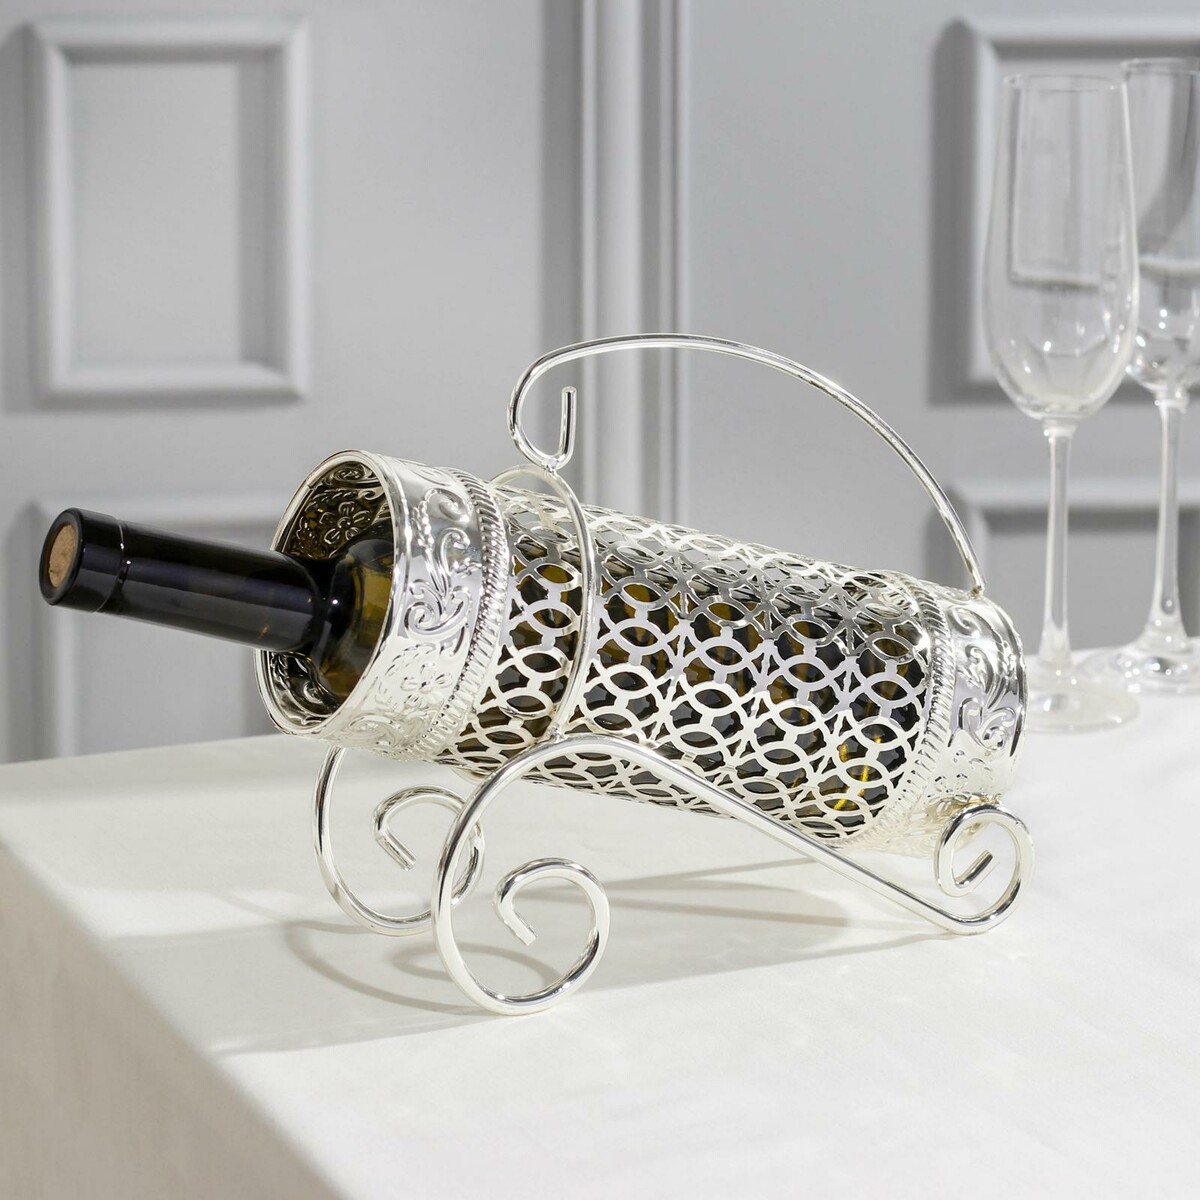 Подставка под бутылку, 24×9,5×21, металлическая, цвет серебряный подставка подогрев для чайника 13 5×13 5×6 см серебряный